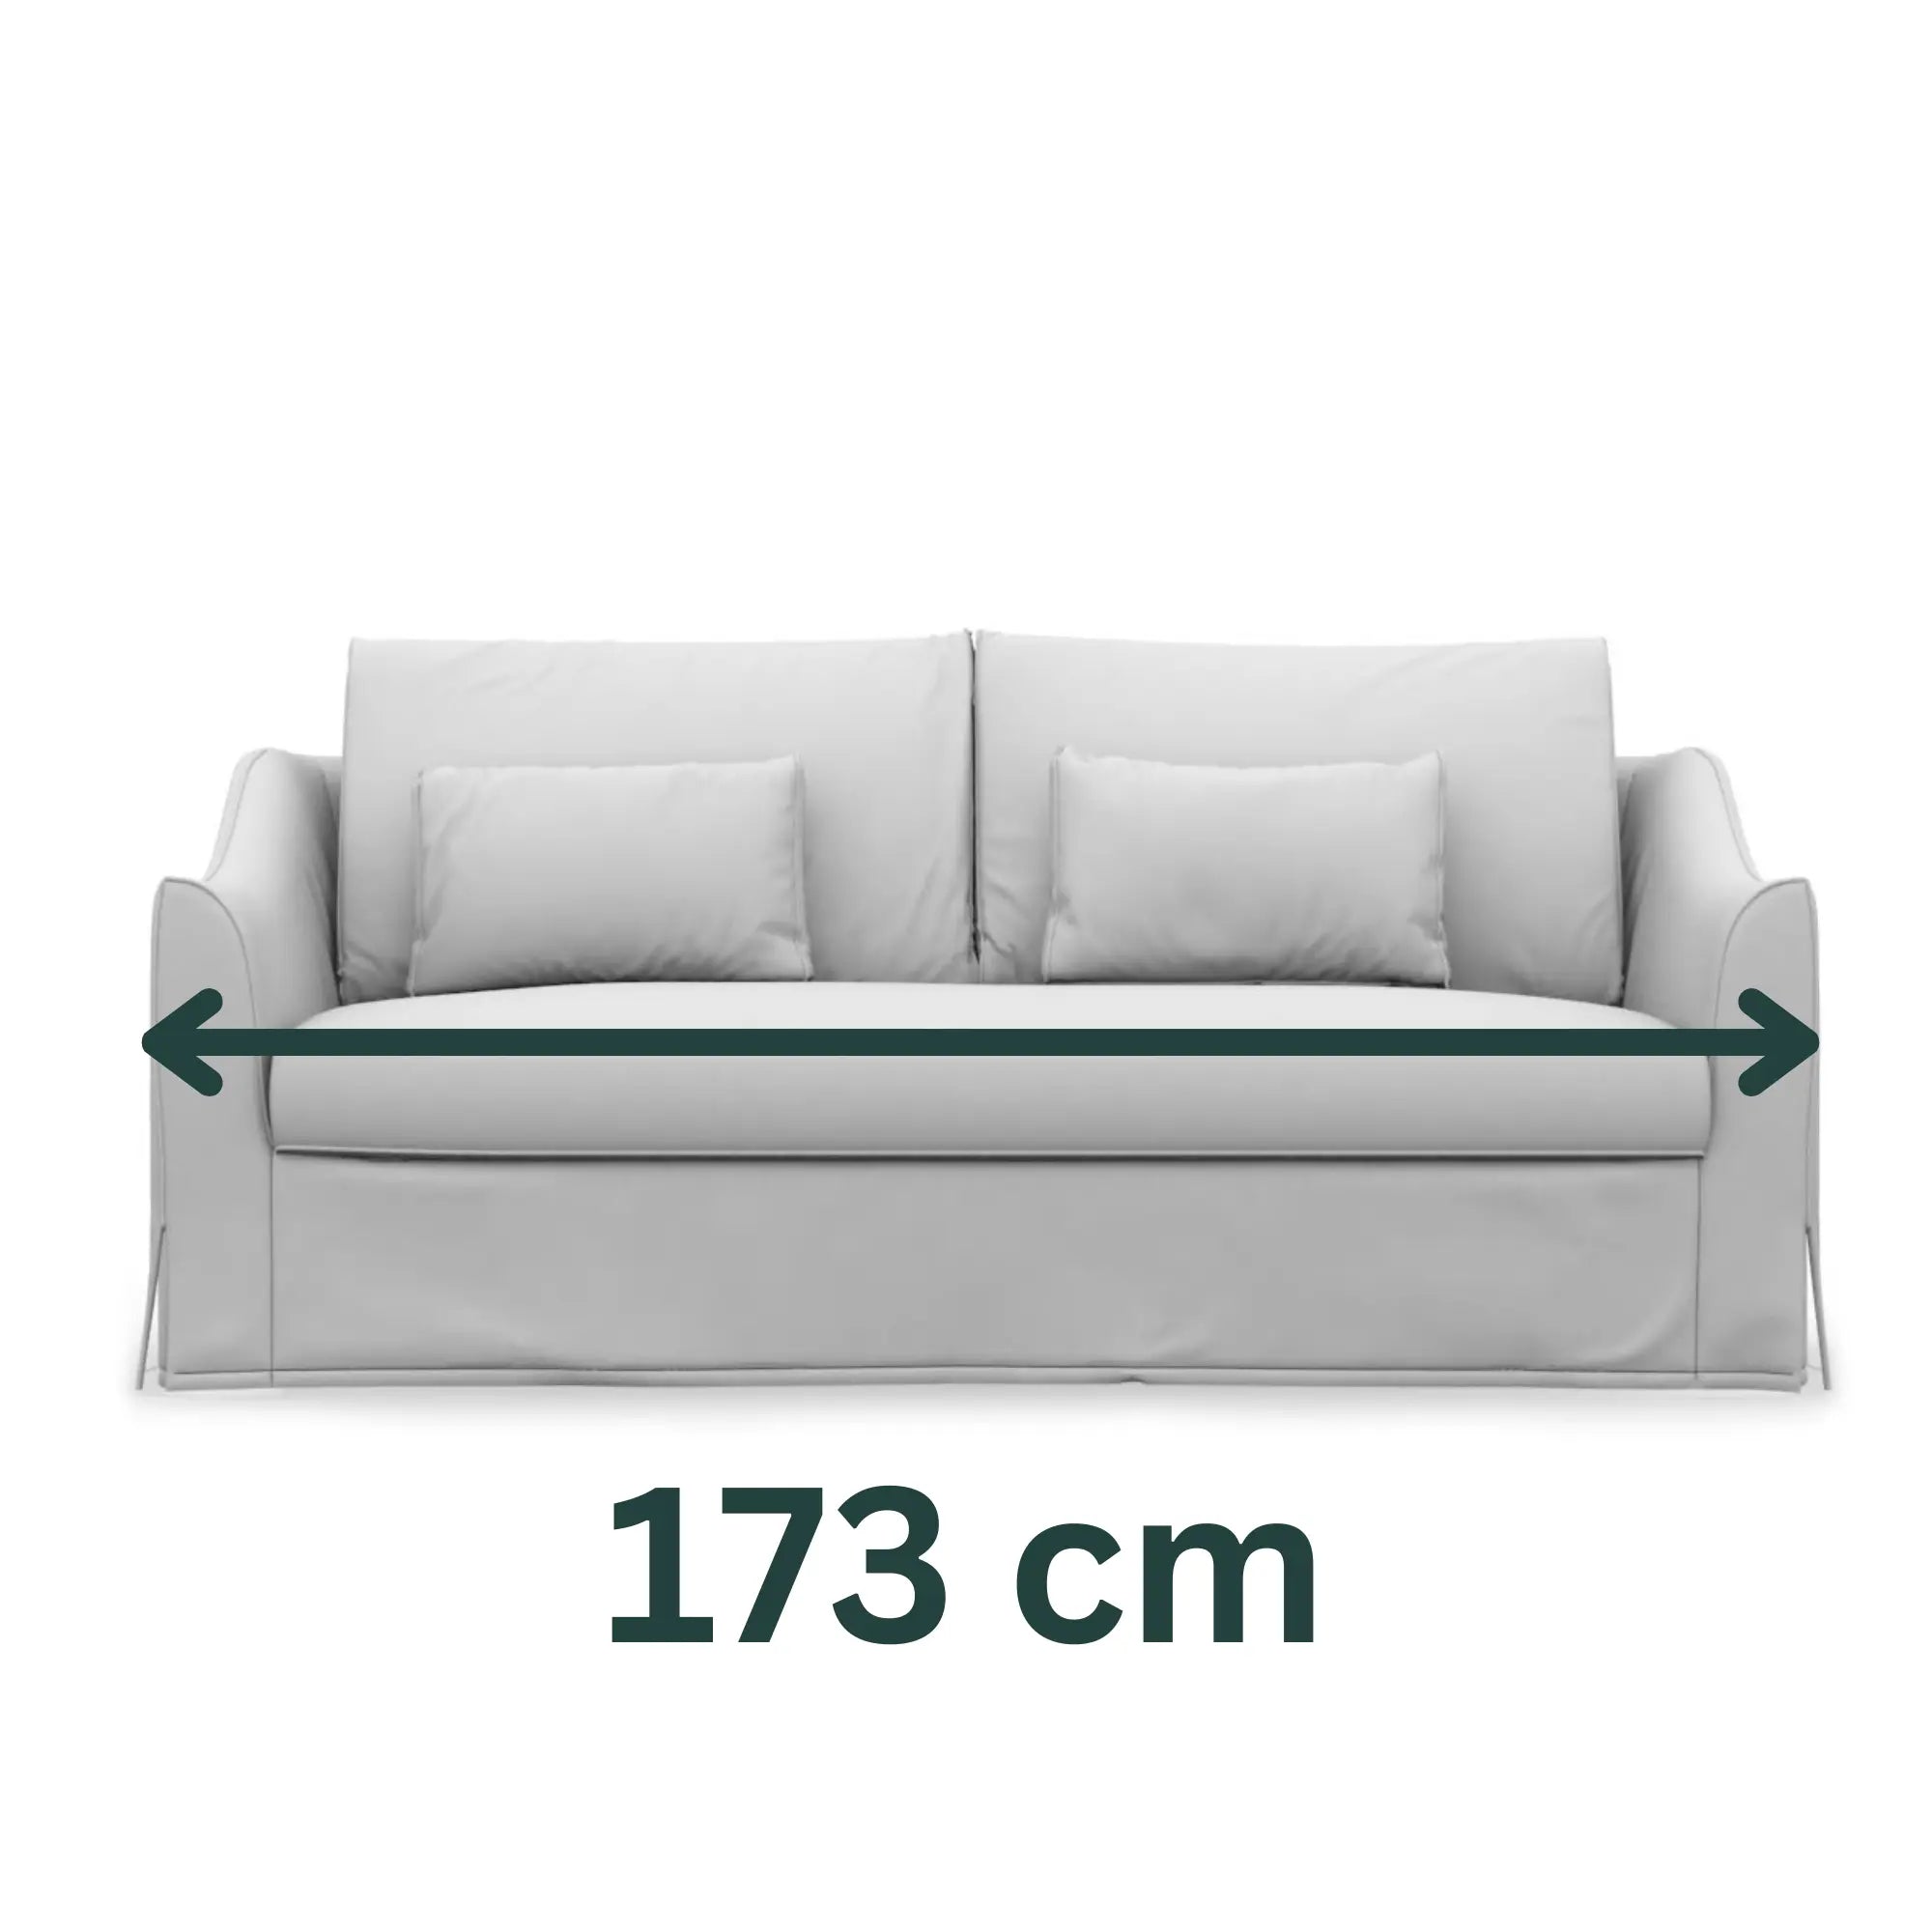 FÄRLÖV 2-Seat IKEA Sofa Bed Cover